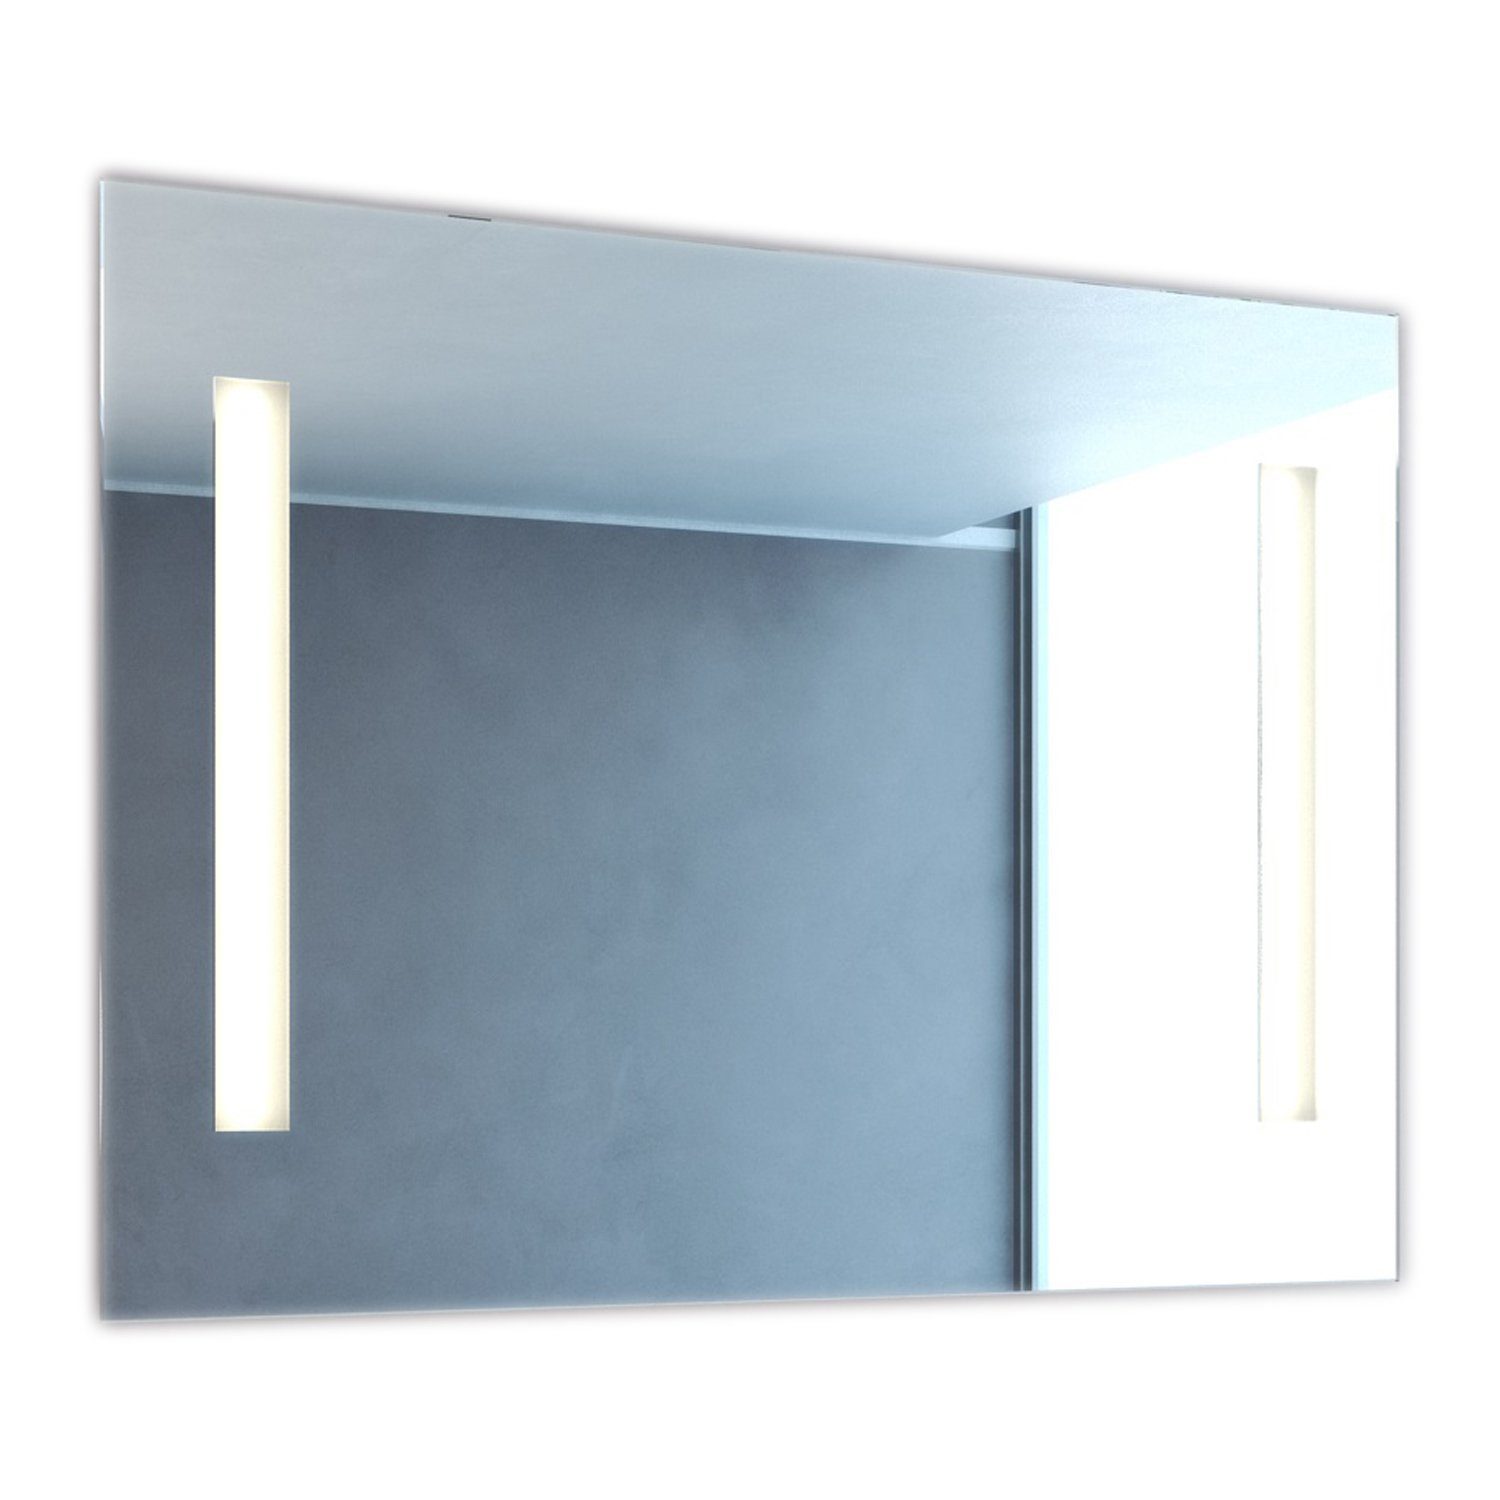 NEG Badspiegel NEG Bad-Spiegel Mitra mit energiesparender LED-Bel